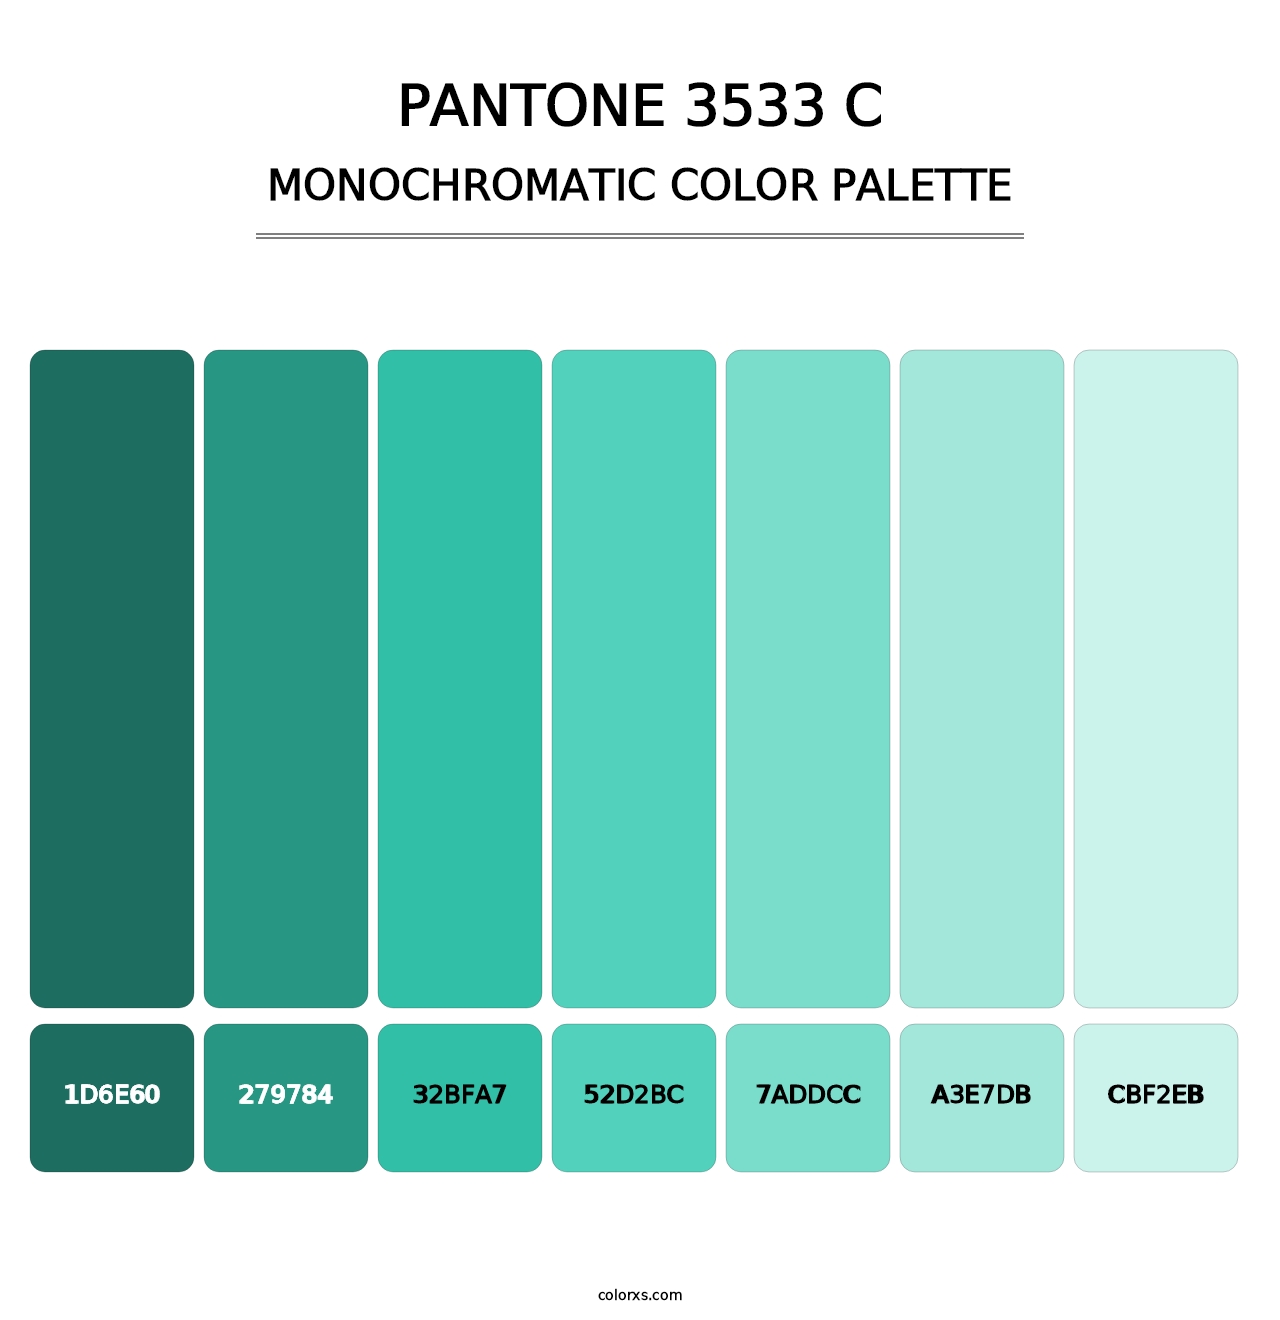 PANTONE 3533 C - Monochromatic Color Palette